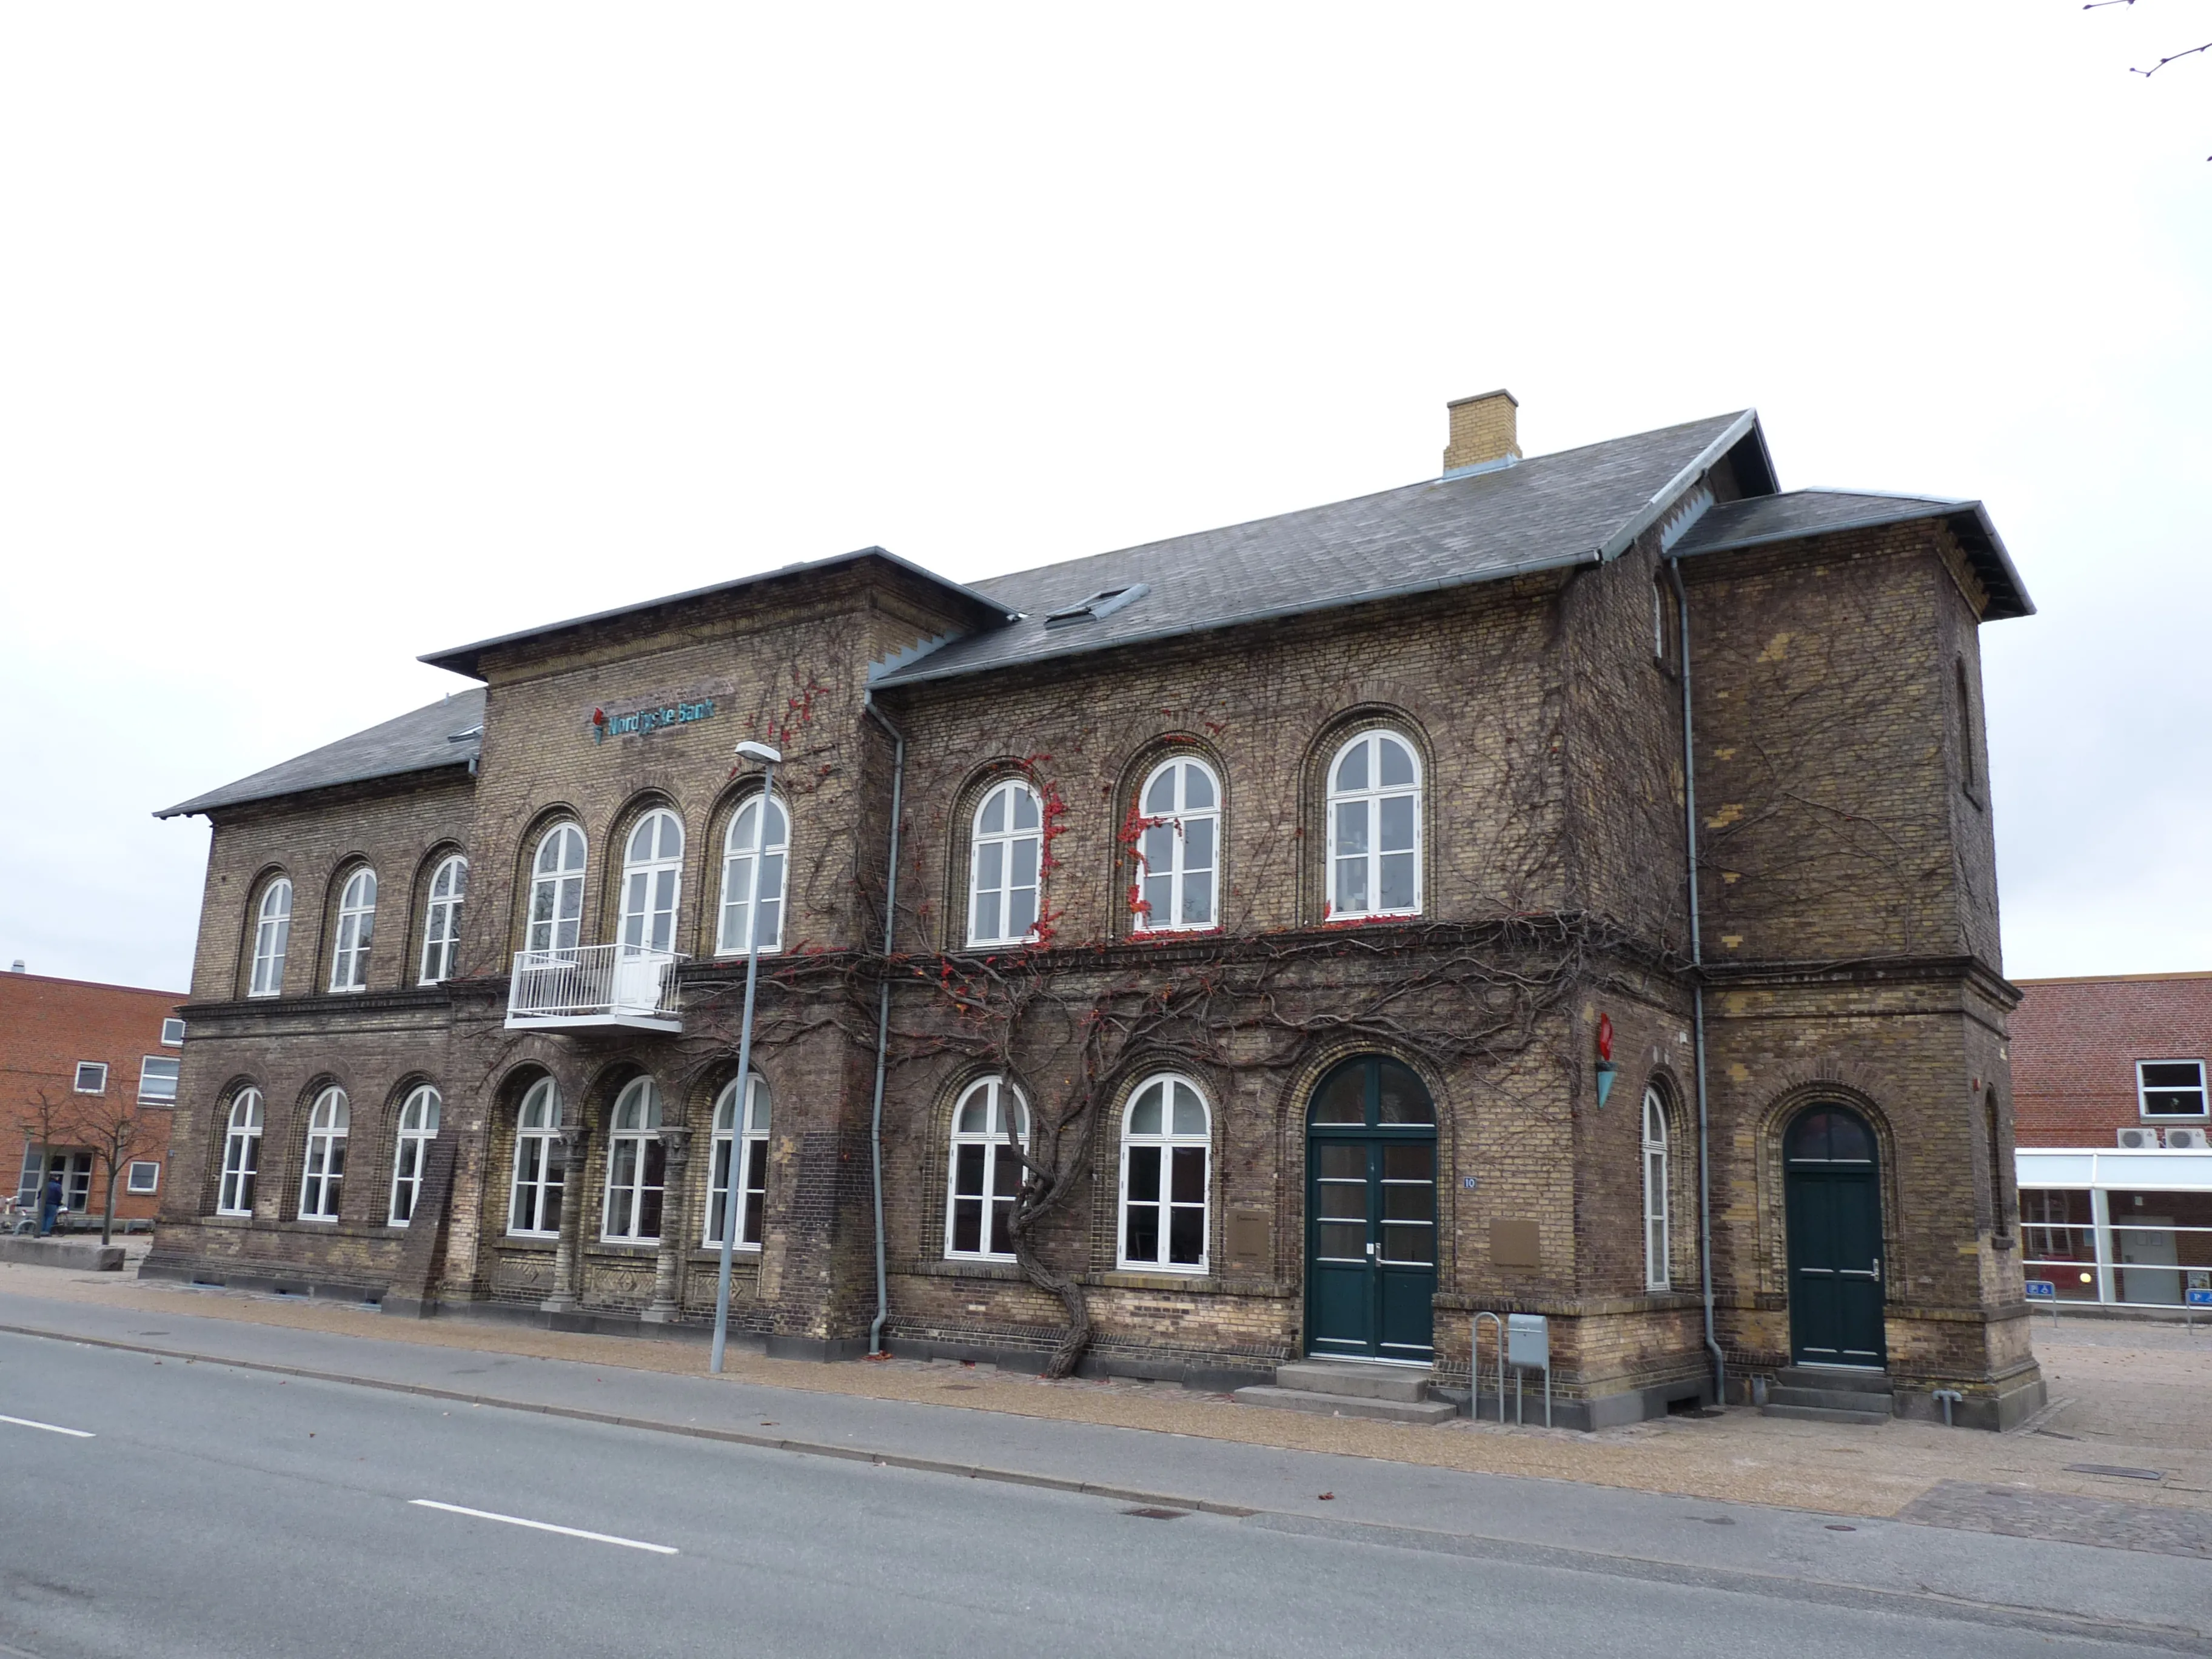 Billede af Frederikshavn gamle station - der er kun denne postbygning tilbage.